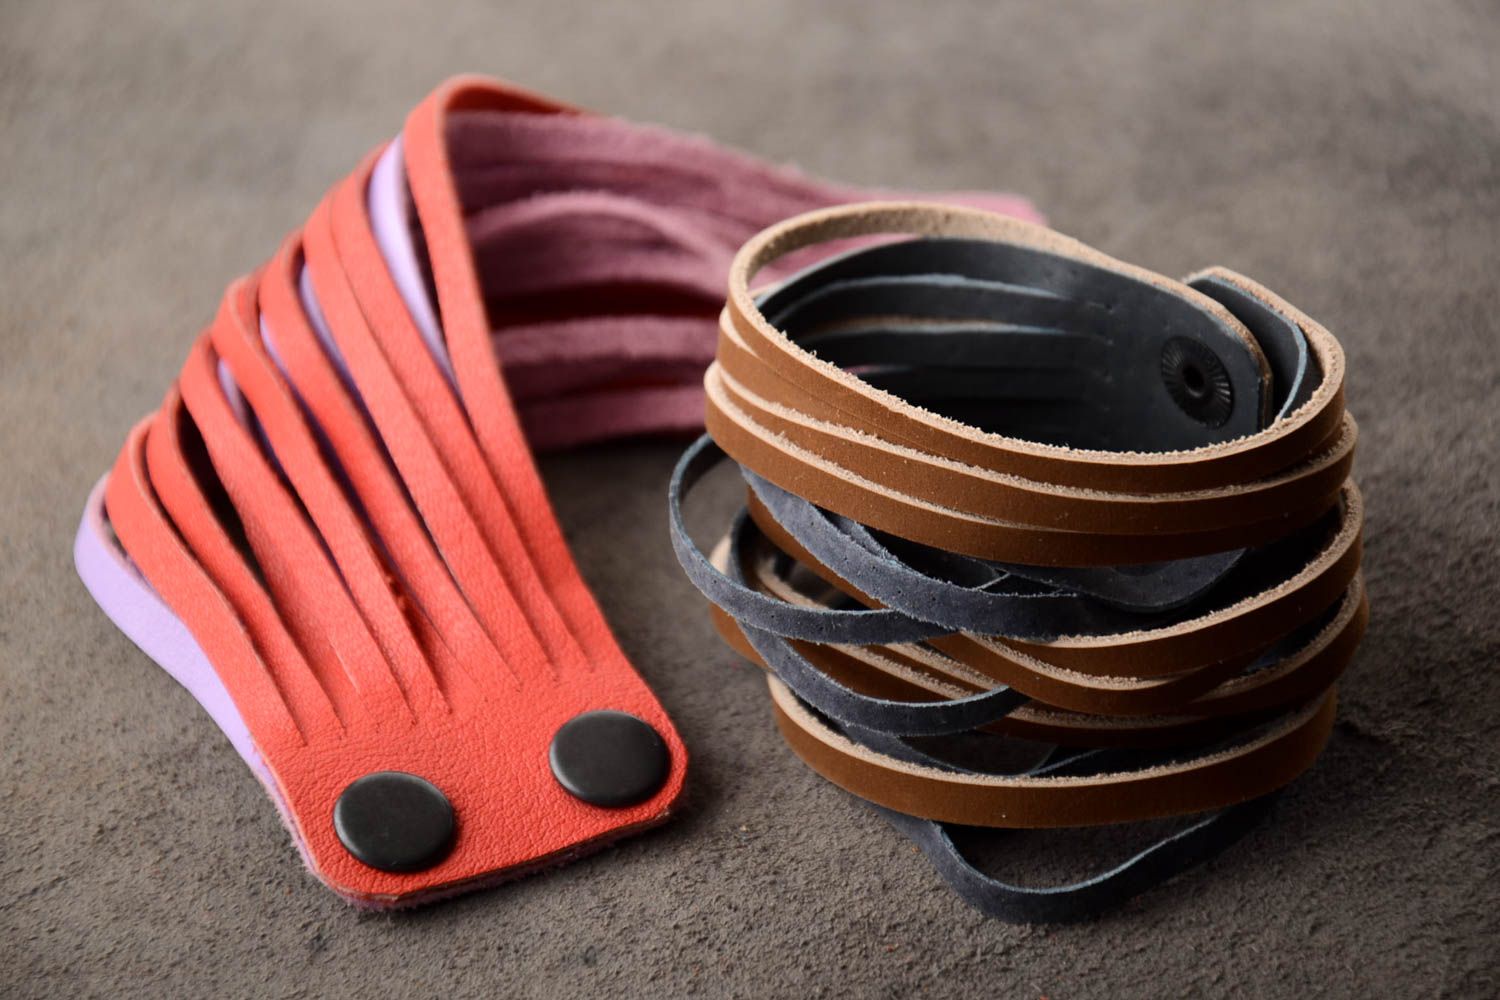 Купить Кожаные браслеты из кожи оптом в СПБ - цены от производителя Махаон